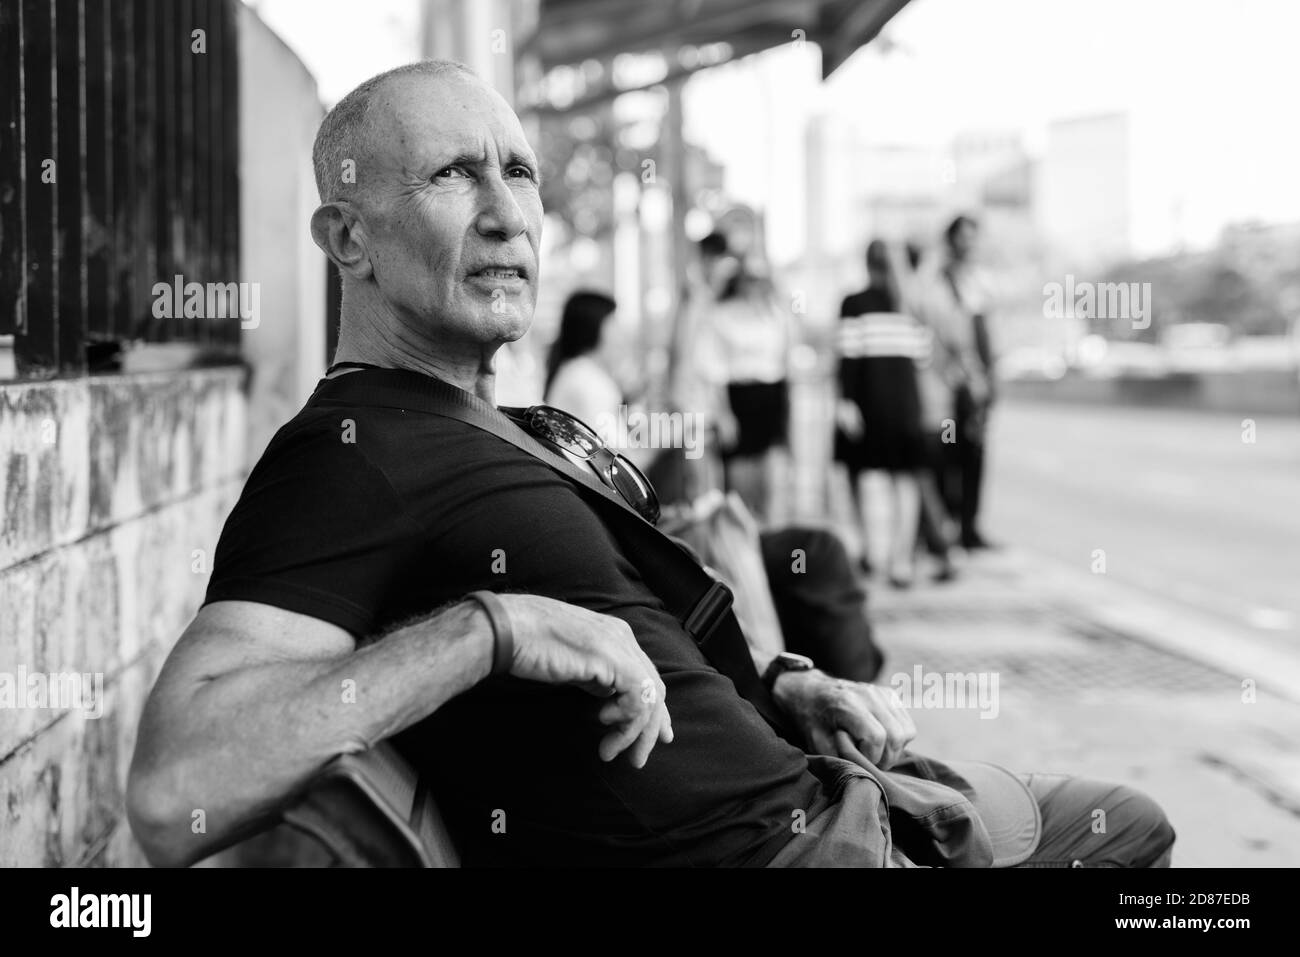 Senior homme chauve touristique et d'attente assis sur banc en bois à l'arrêt de bus à Bangkok, Thaïlande Banque D'Images